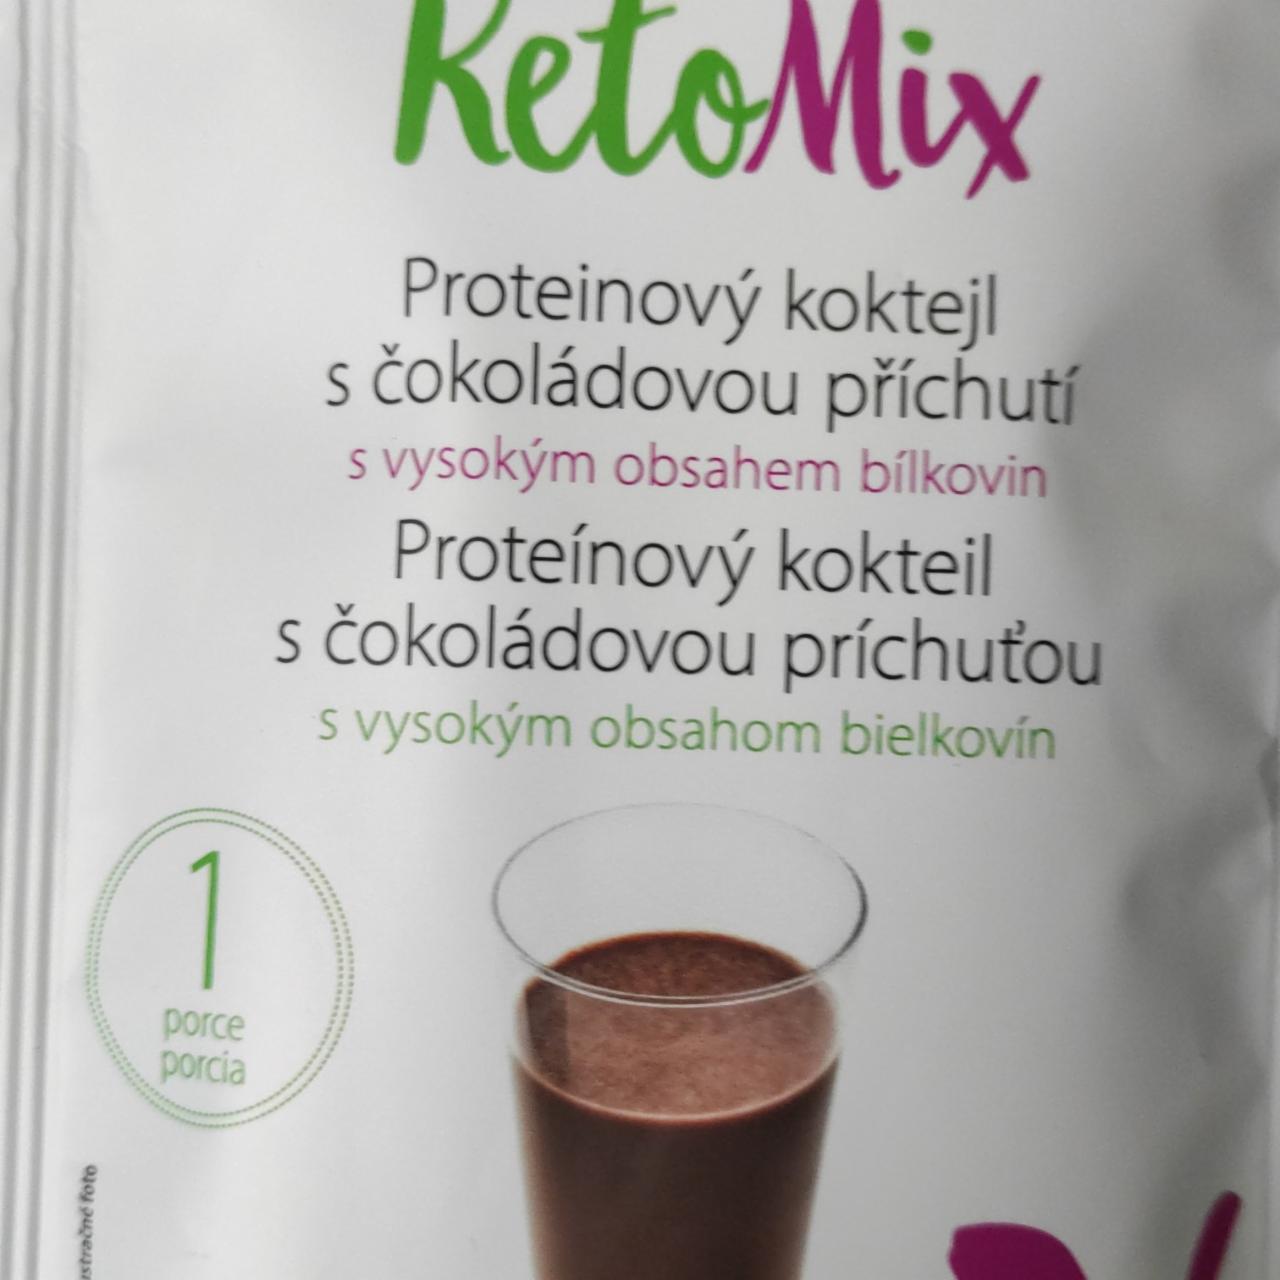 Fotografie - Proteinový koktejl s čokoládovou příchutí KetoMix